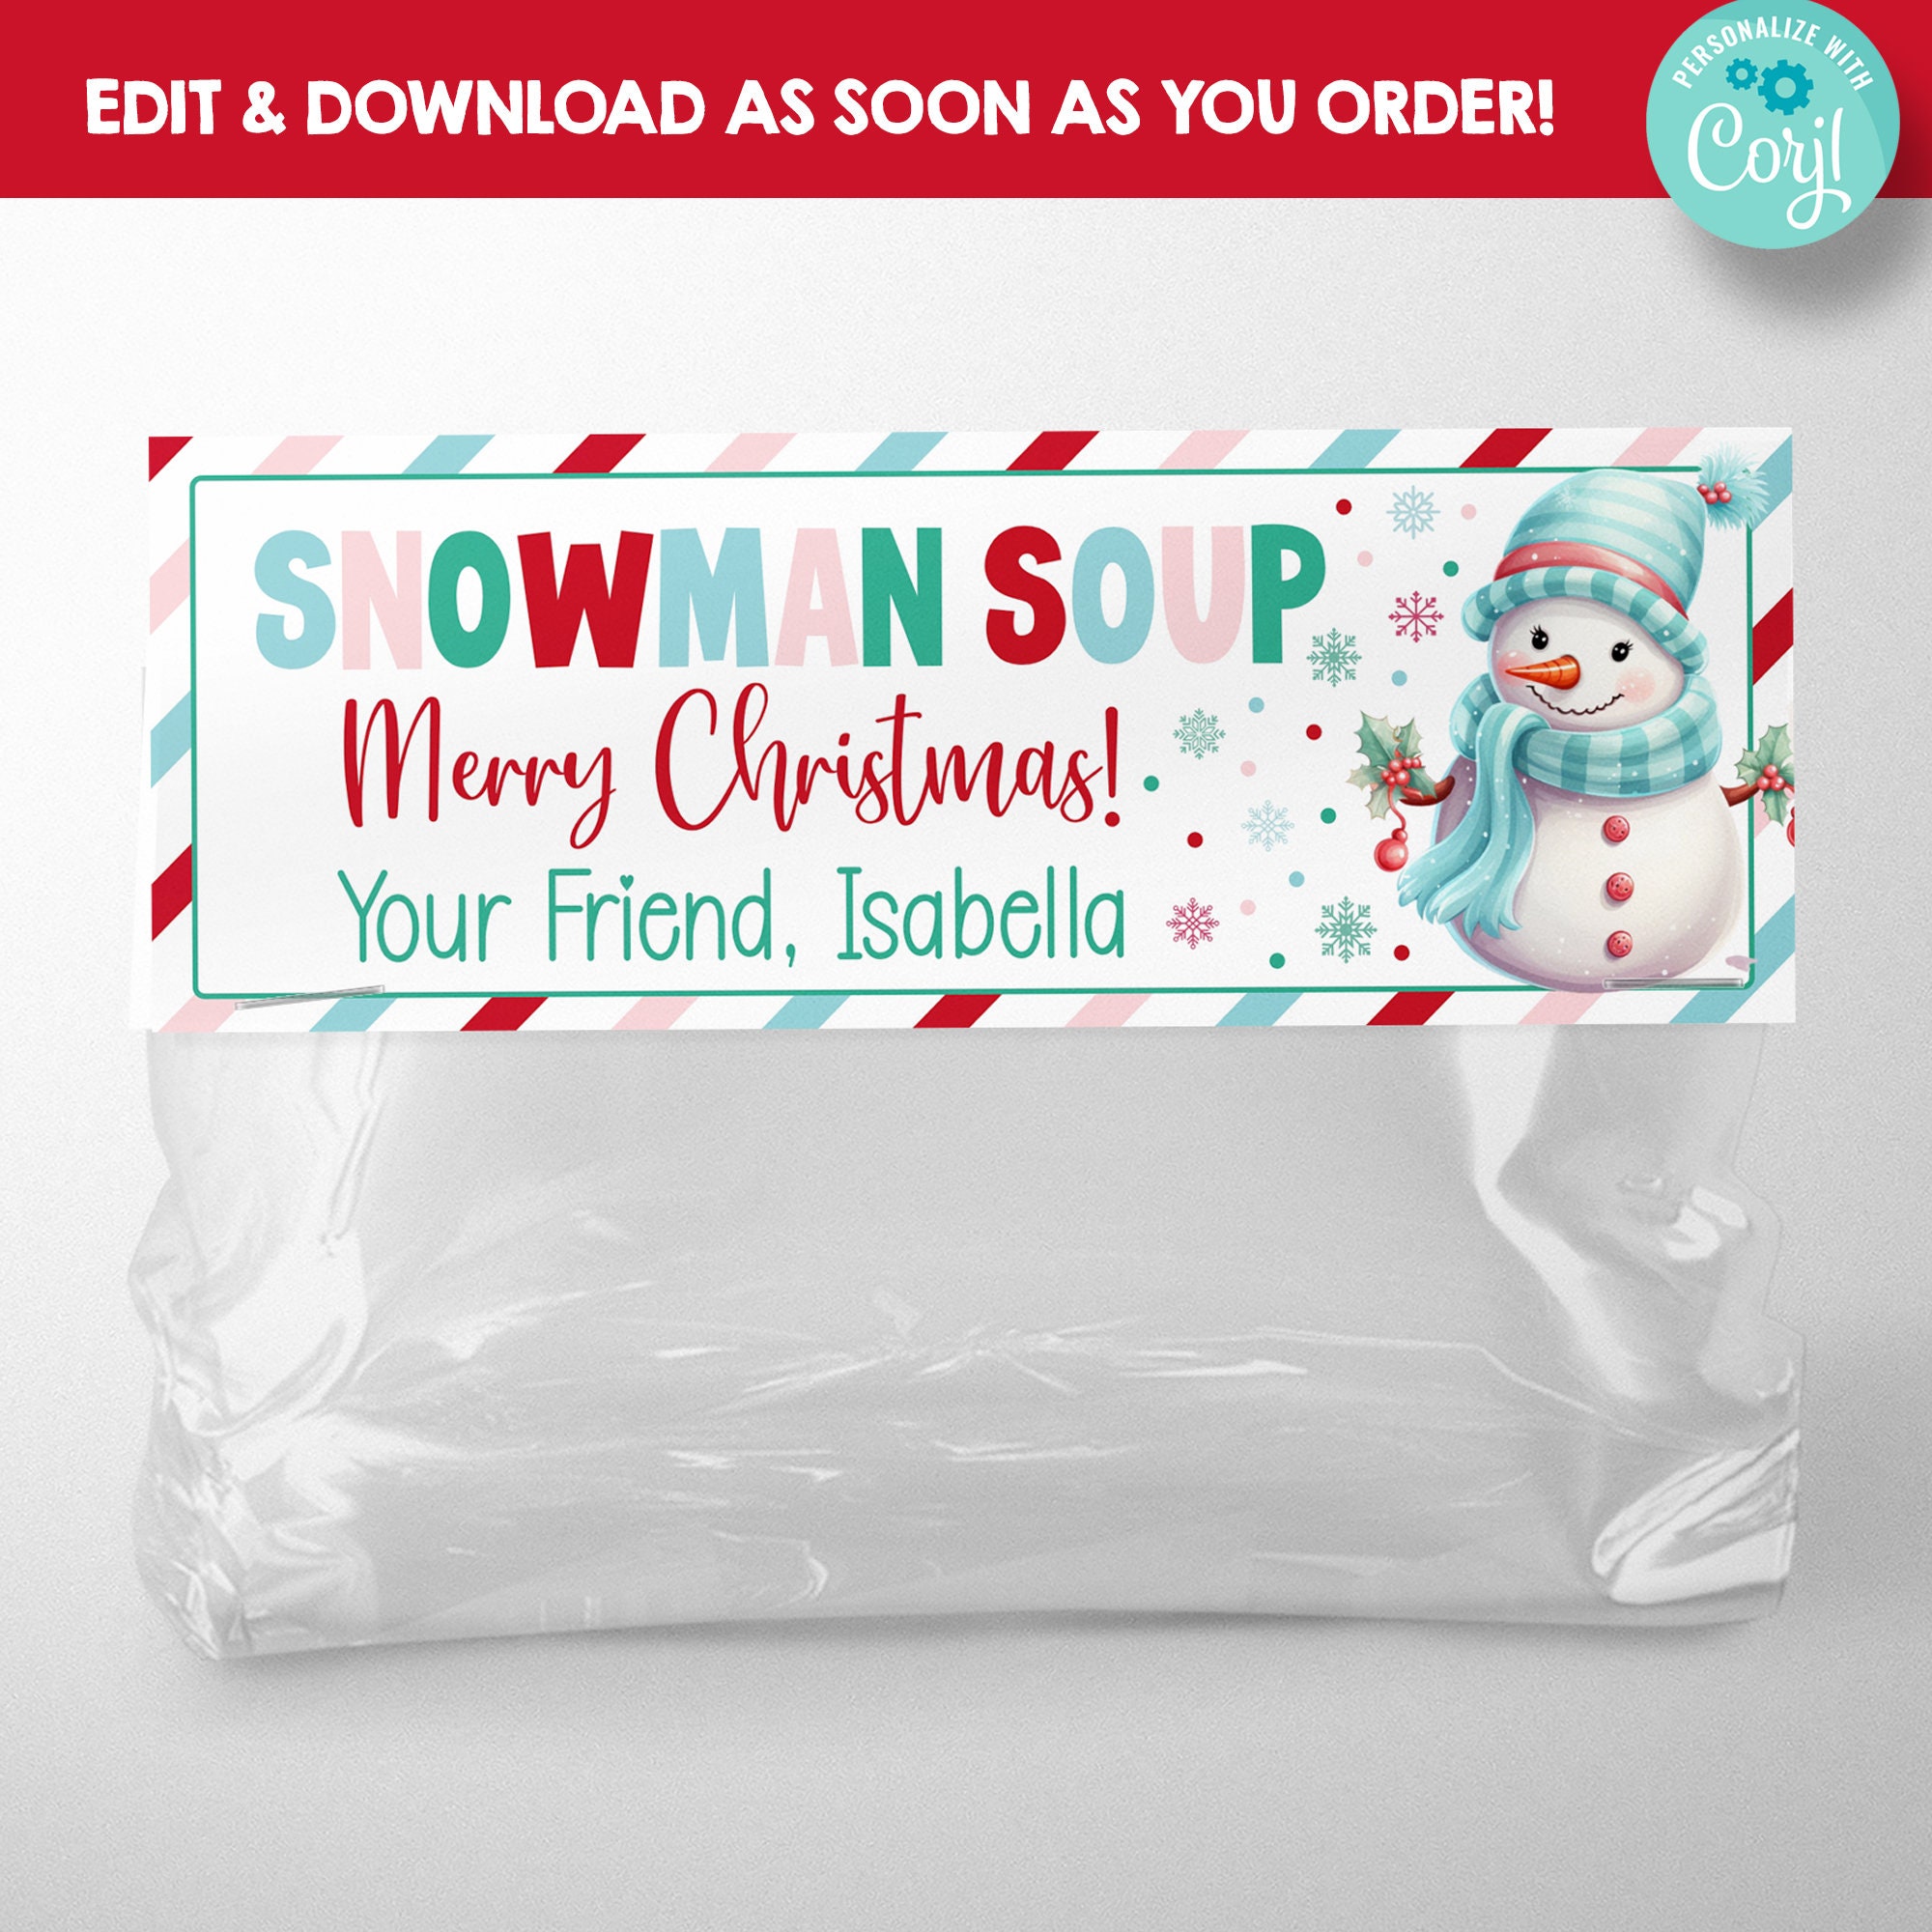 Set of 10 Vintage Ziploc Christmas Bags- Funny Plastic Seasons Greetings  Baggies